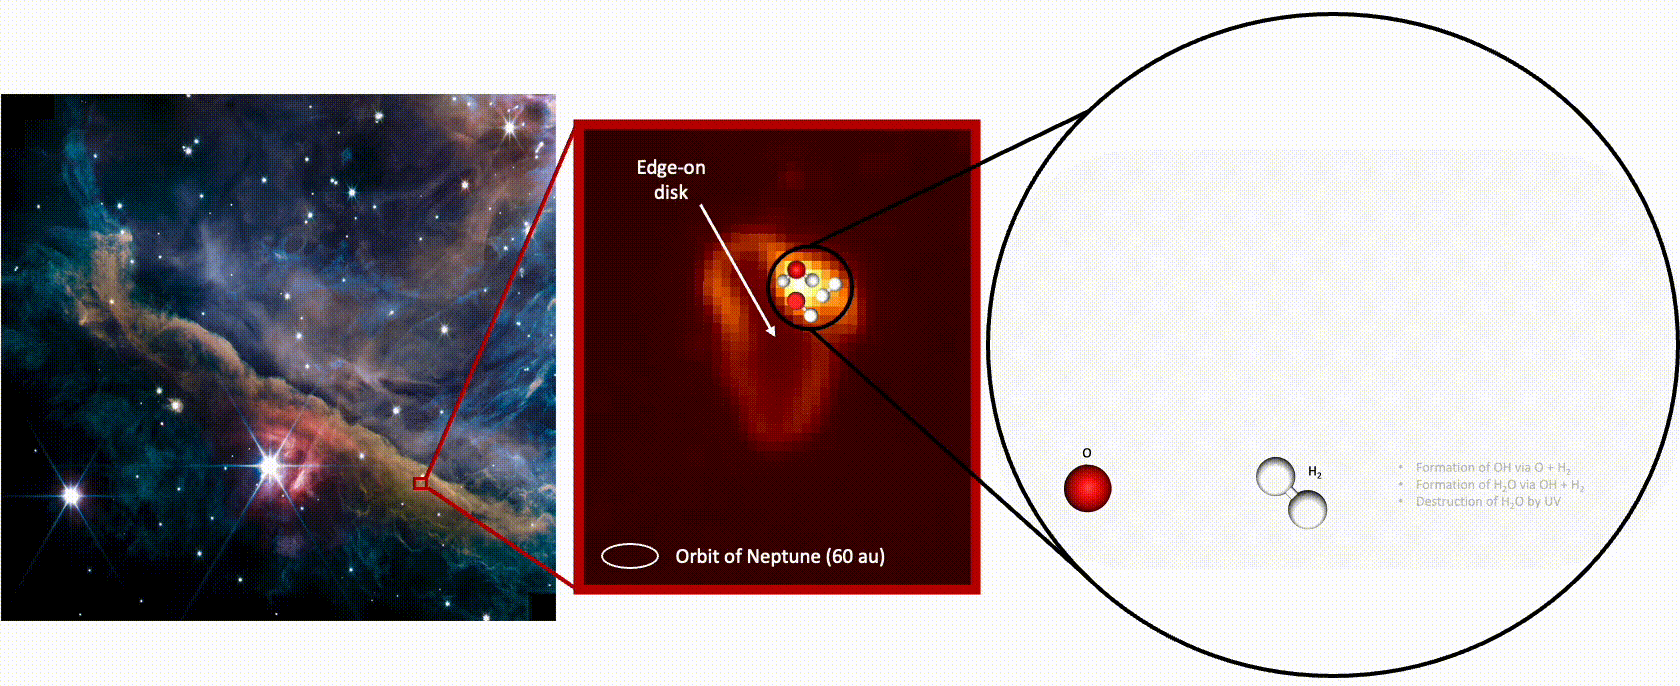 左图和中间图：韦伯太空望远镜观测到的埋藏在猎户座星云中原始行星盘d203-506。（来源：NASA / ESA / CSA / PDRs4All / Salomé.）右图：动画展示了韦伯太空望远镜观测揭示了水的形成和破坏过程。（来源： M. Zannese.）